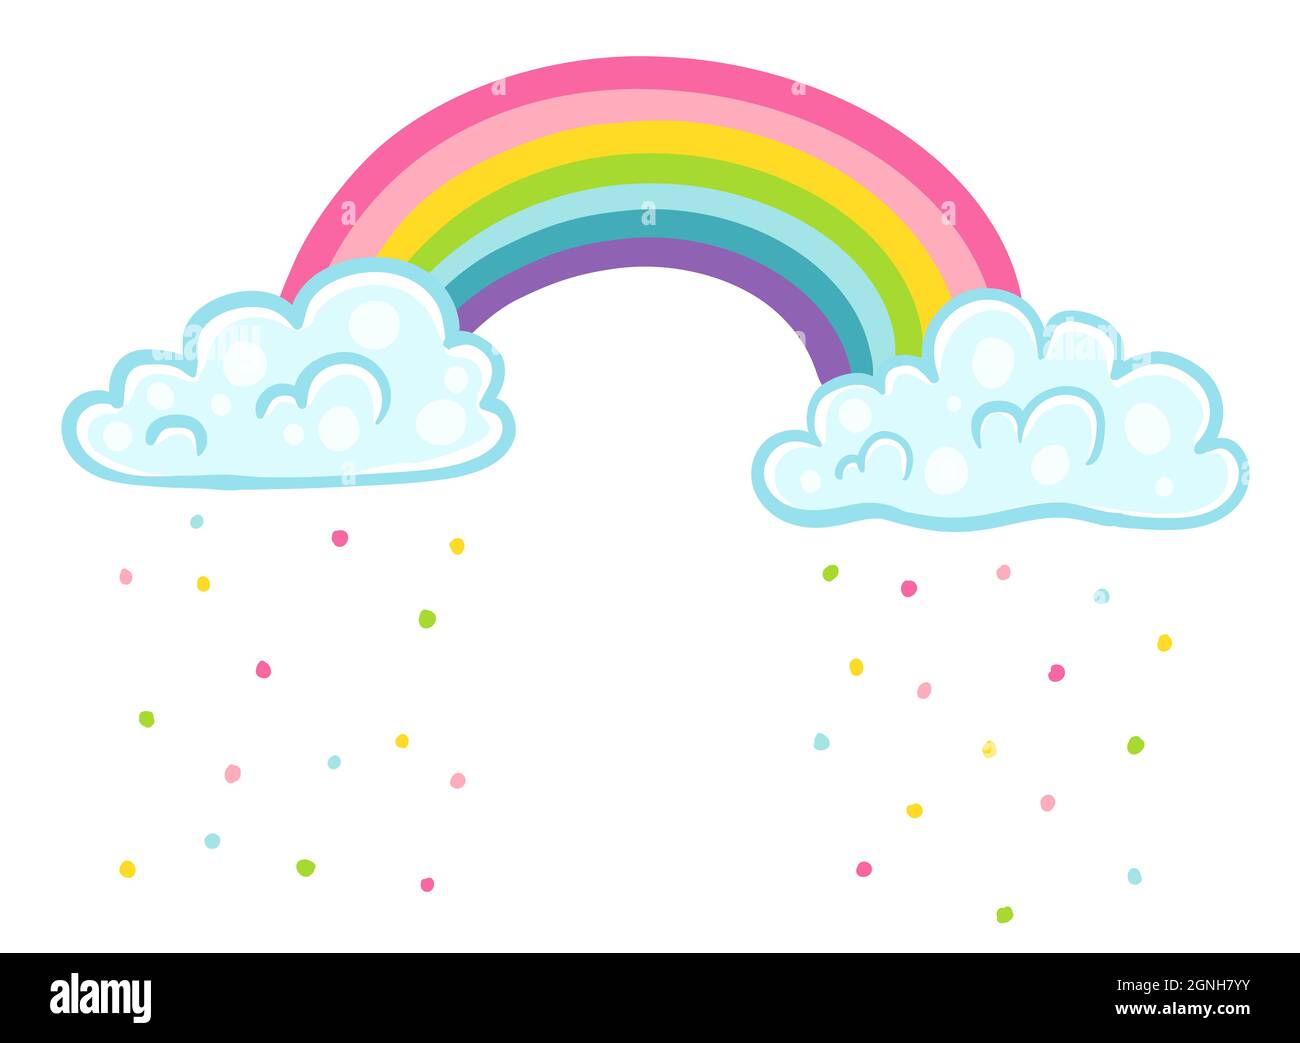 Illustrazione vettoriale di un arcobaleno con nuvole in stile kawaii. Nuvole con confetti e arcobaleno. Illustrazione Vettoriale